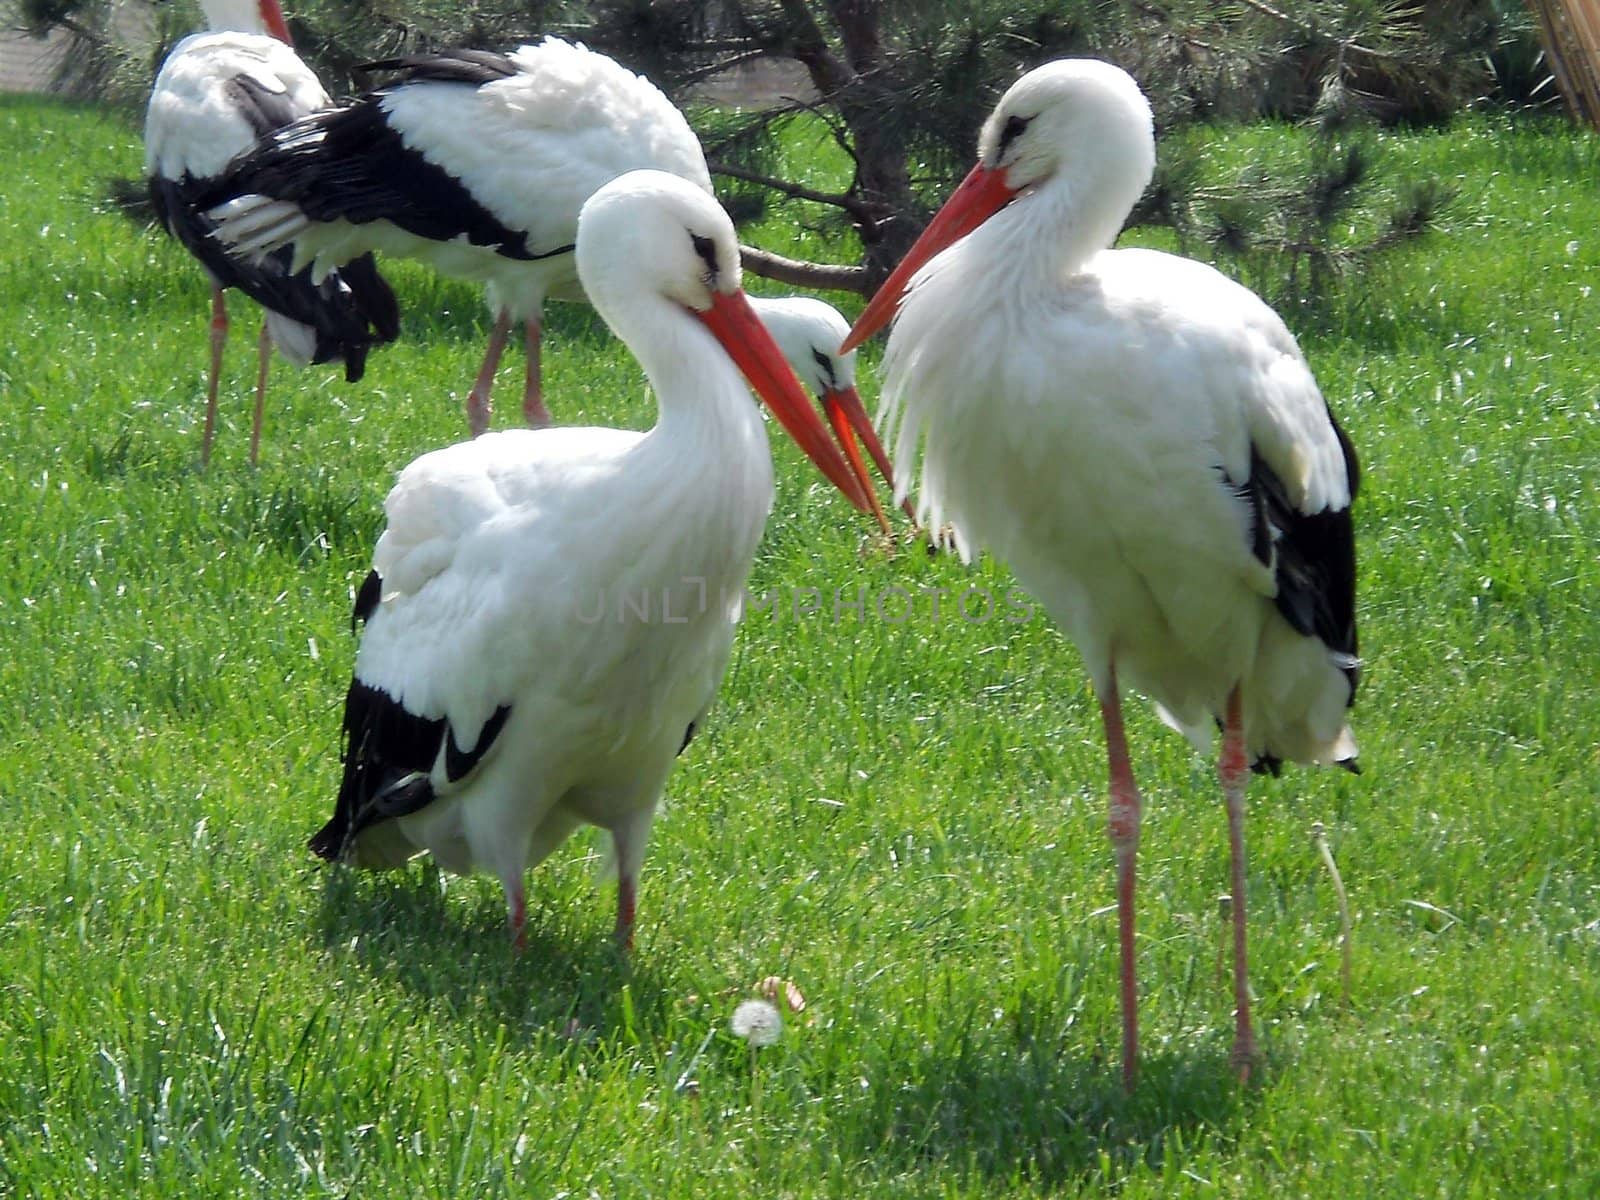 Storks in city park, Tashkent, Uzbekistan